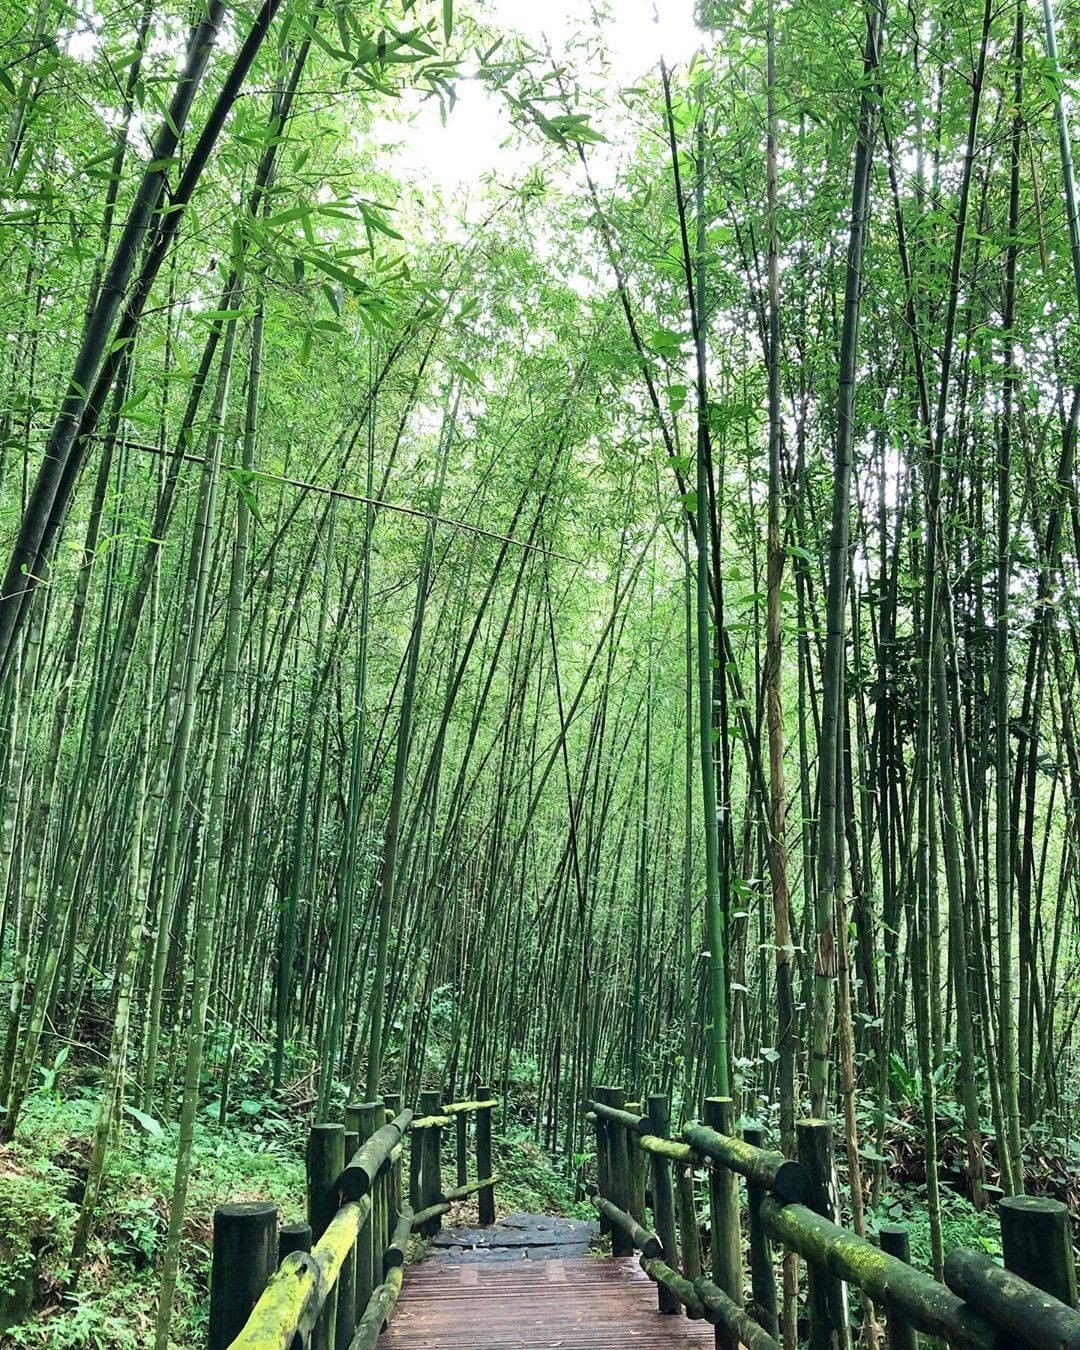 竹林步道是炎炎夏日消暑的最佳聖地呀~~~-⠀⠀⠀⠀⠀⠀⠀⠀⠀⠀⠀感謝 @annashia.tw  分享的美照-⠀⠀⠀⠀⠀⠀⠀⠀⠀⠀...